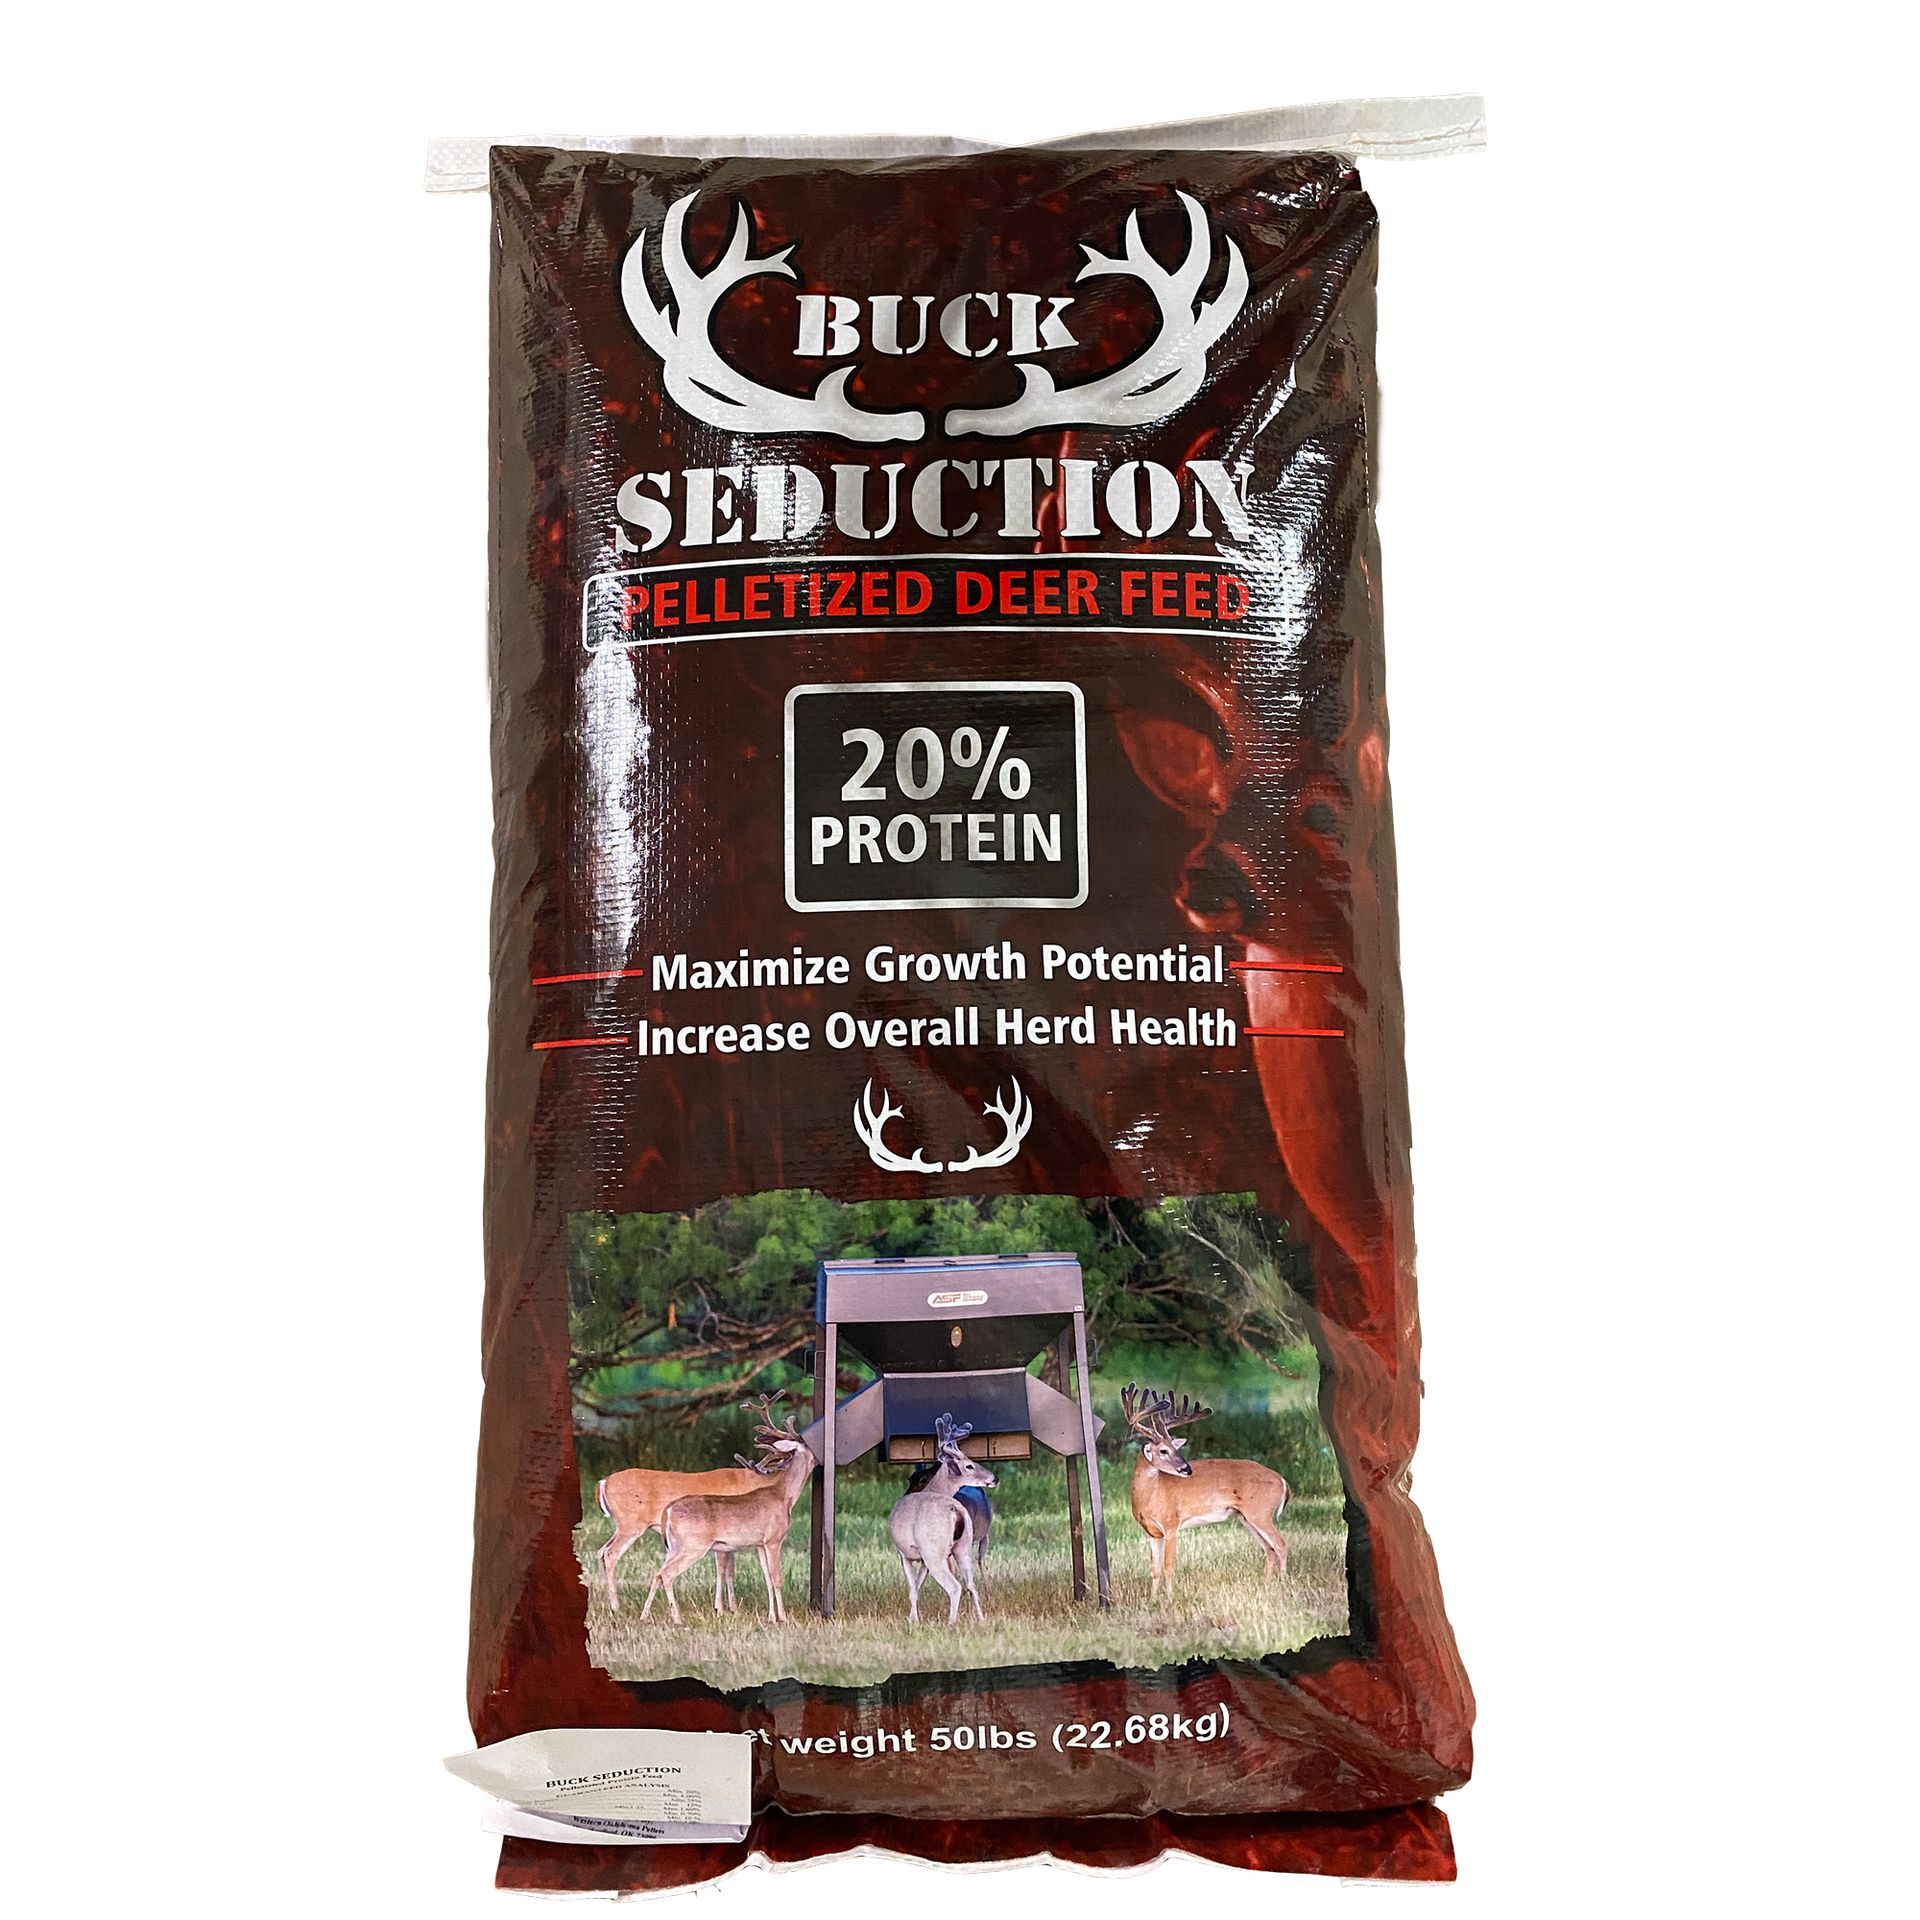 a bag of buck seduction pelletized deer feed